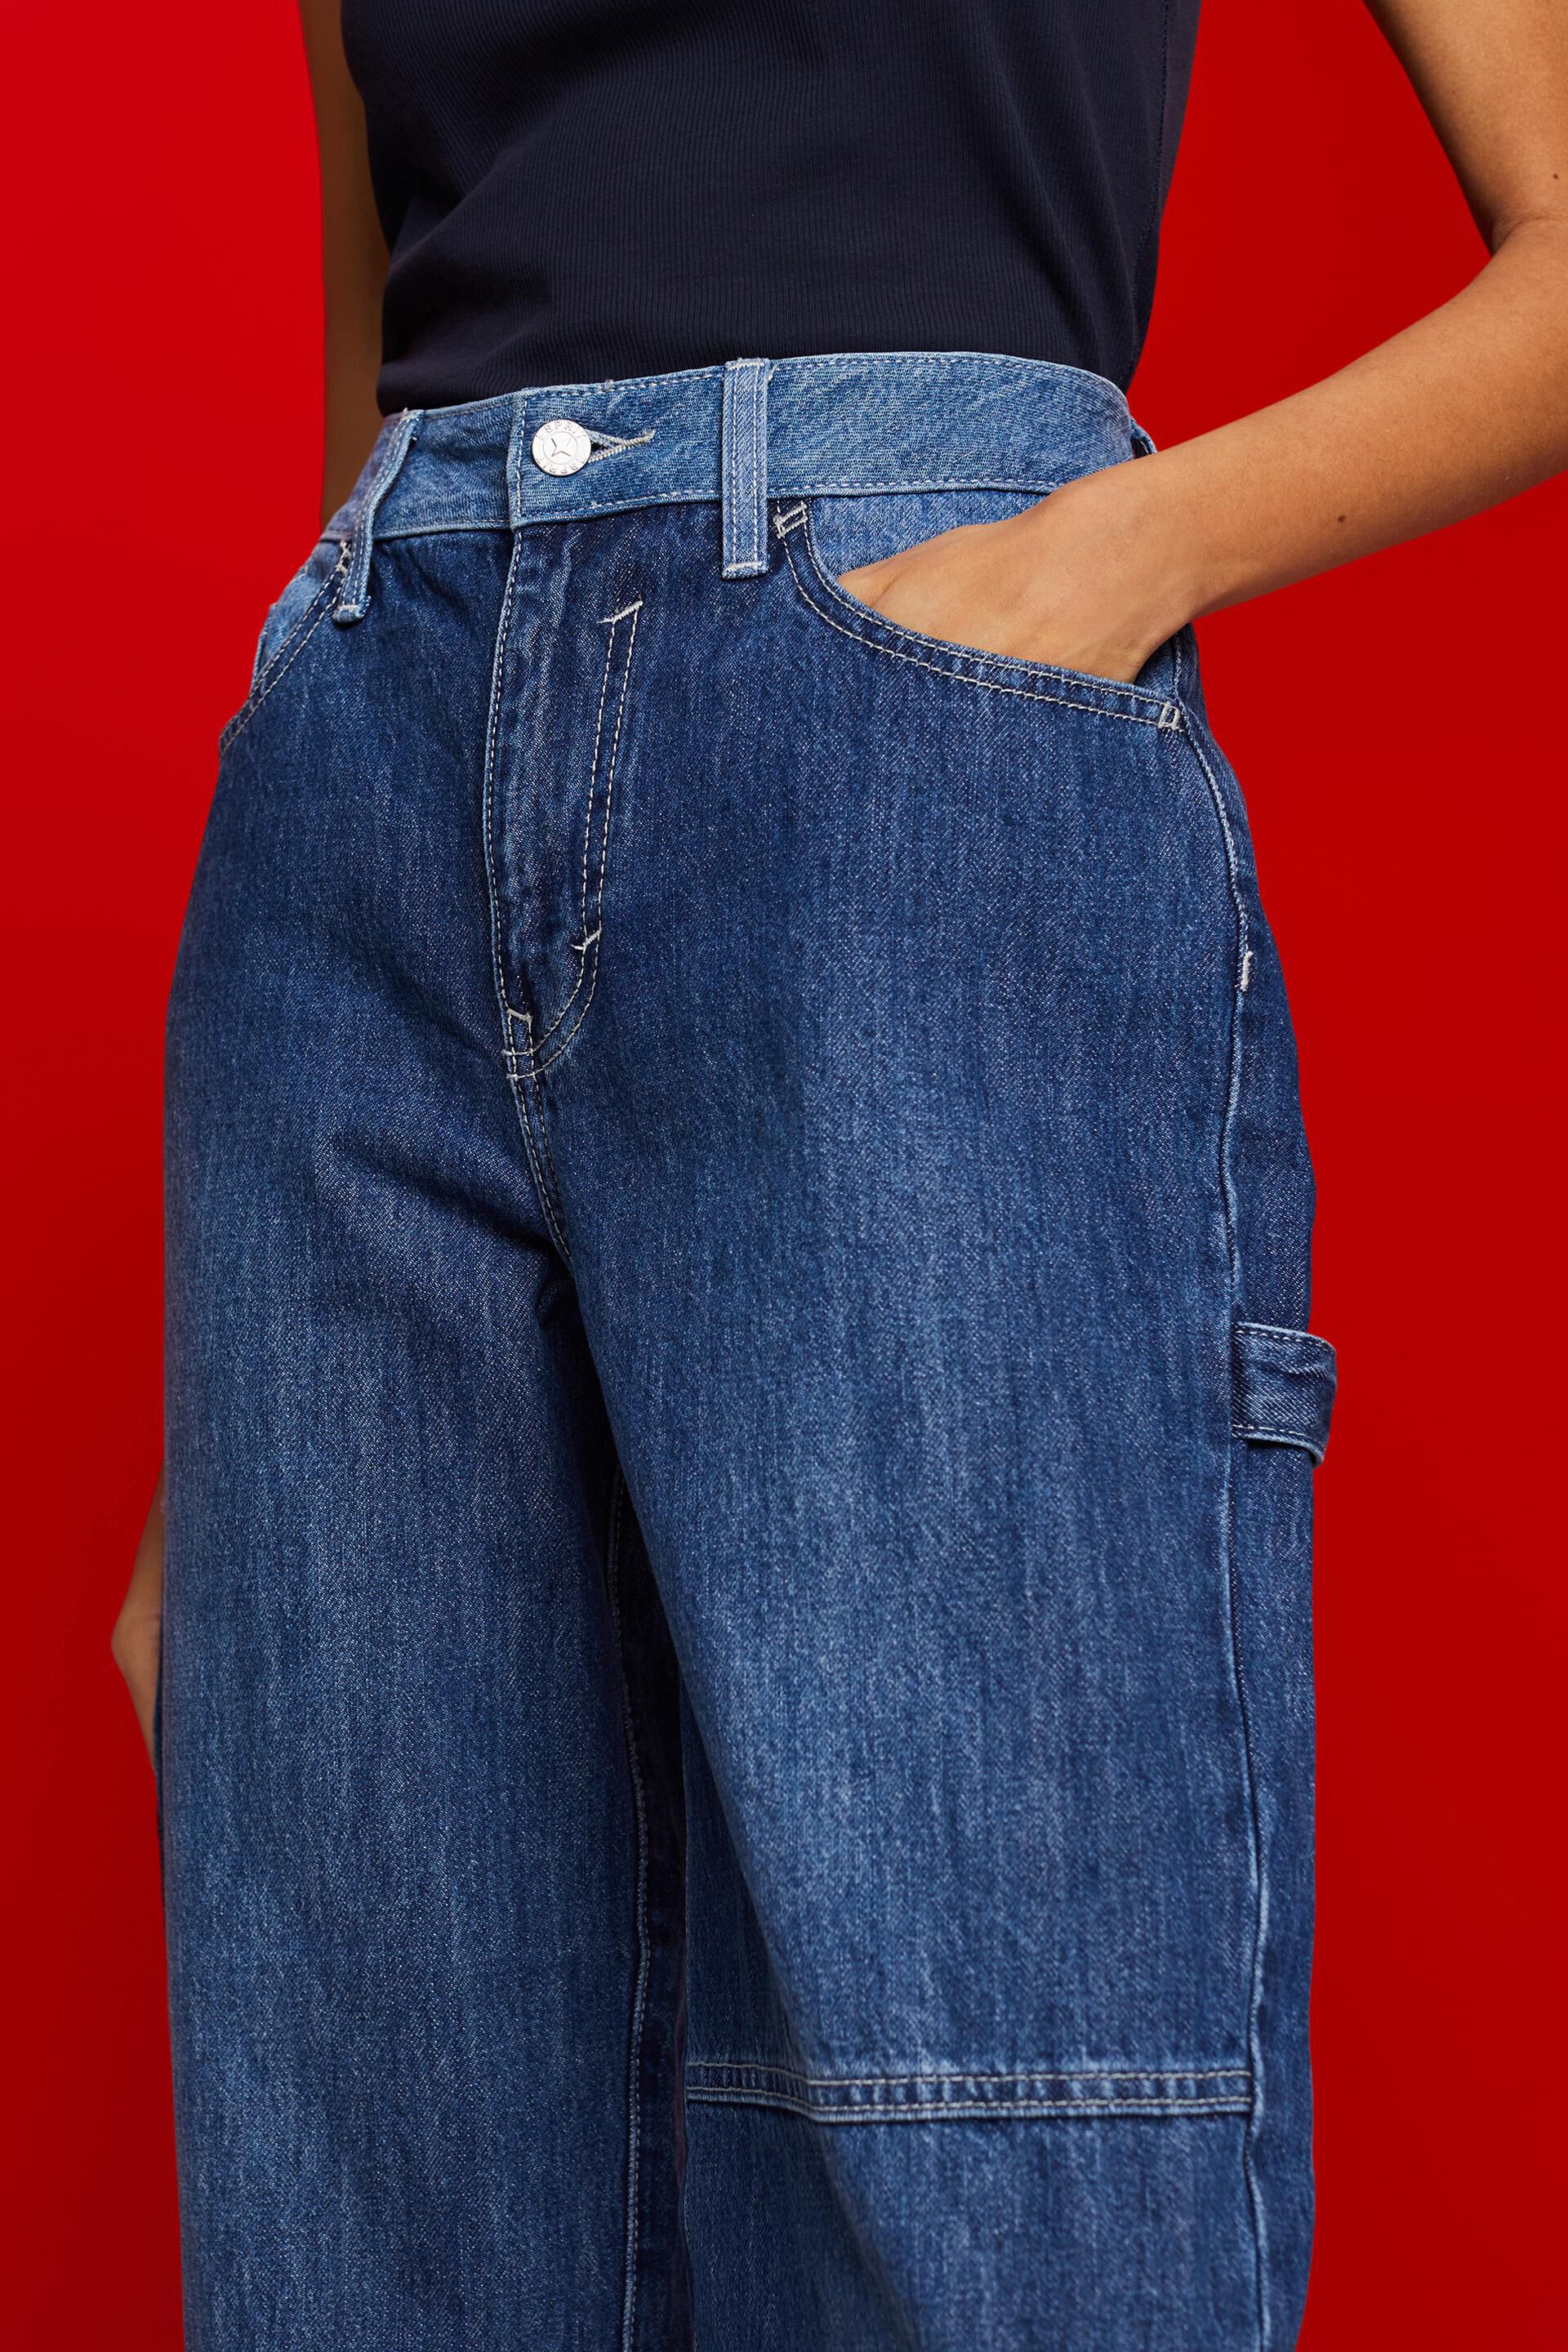 Esprit Damen Asymmetrische Jeans mit weitem 90er Stil Bein der im